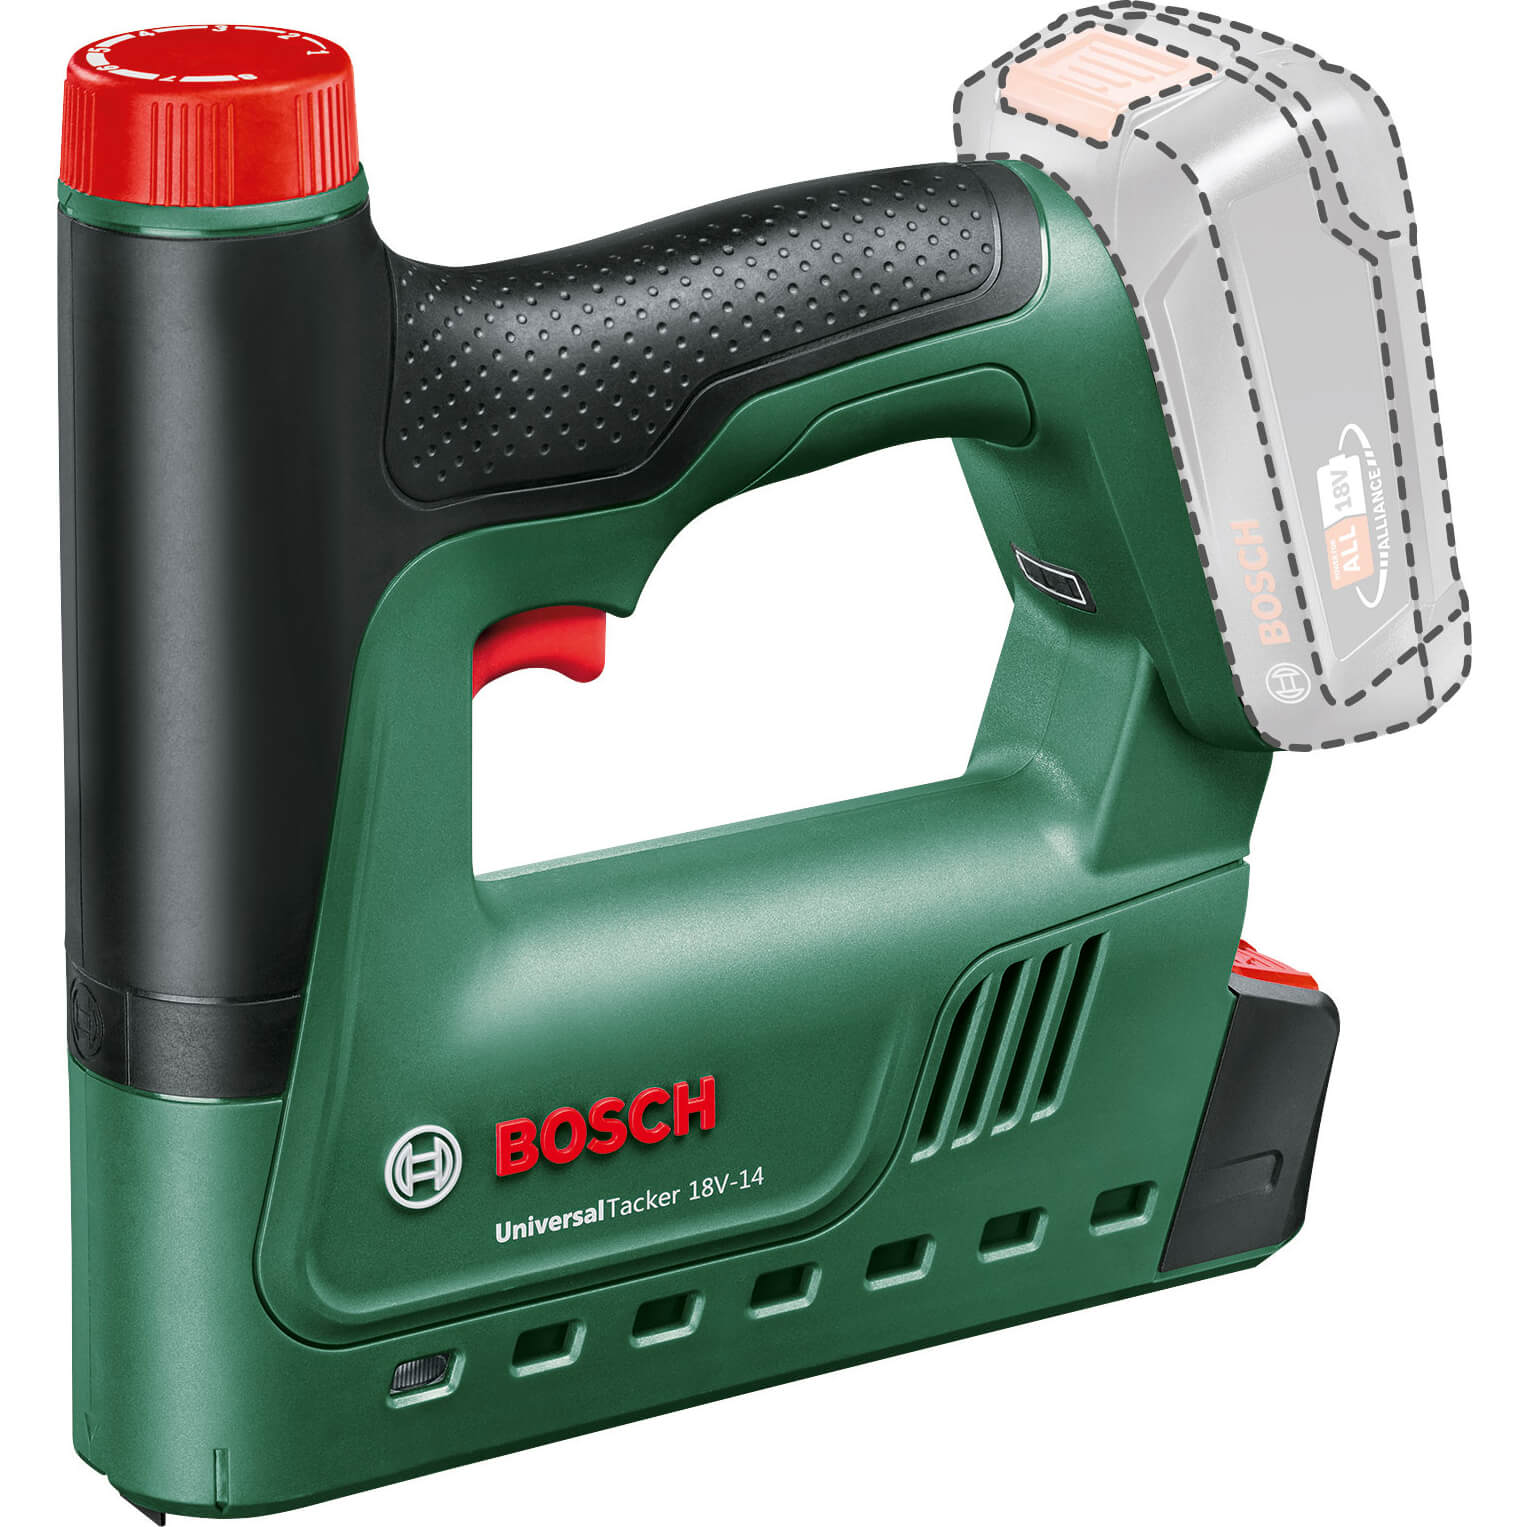 Image of Bosch UNIVERSAL TACKER 18V-14 18v Cordless Nail Tacker and Stapler No Batteries No Charger No Case